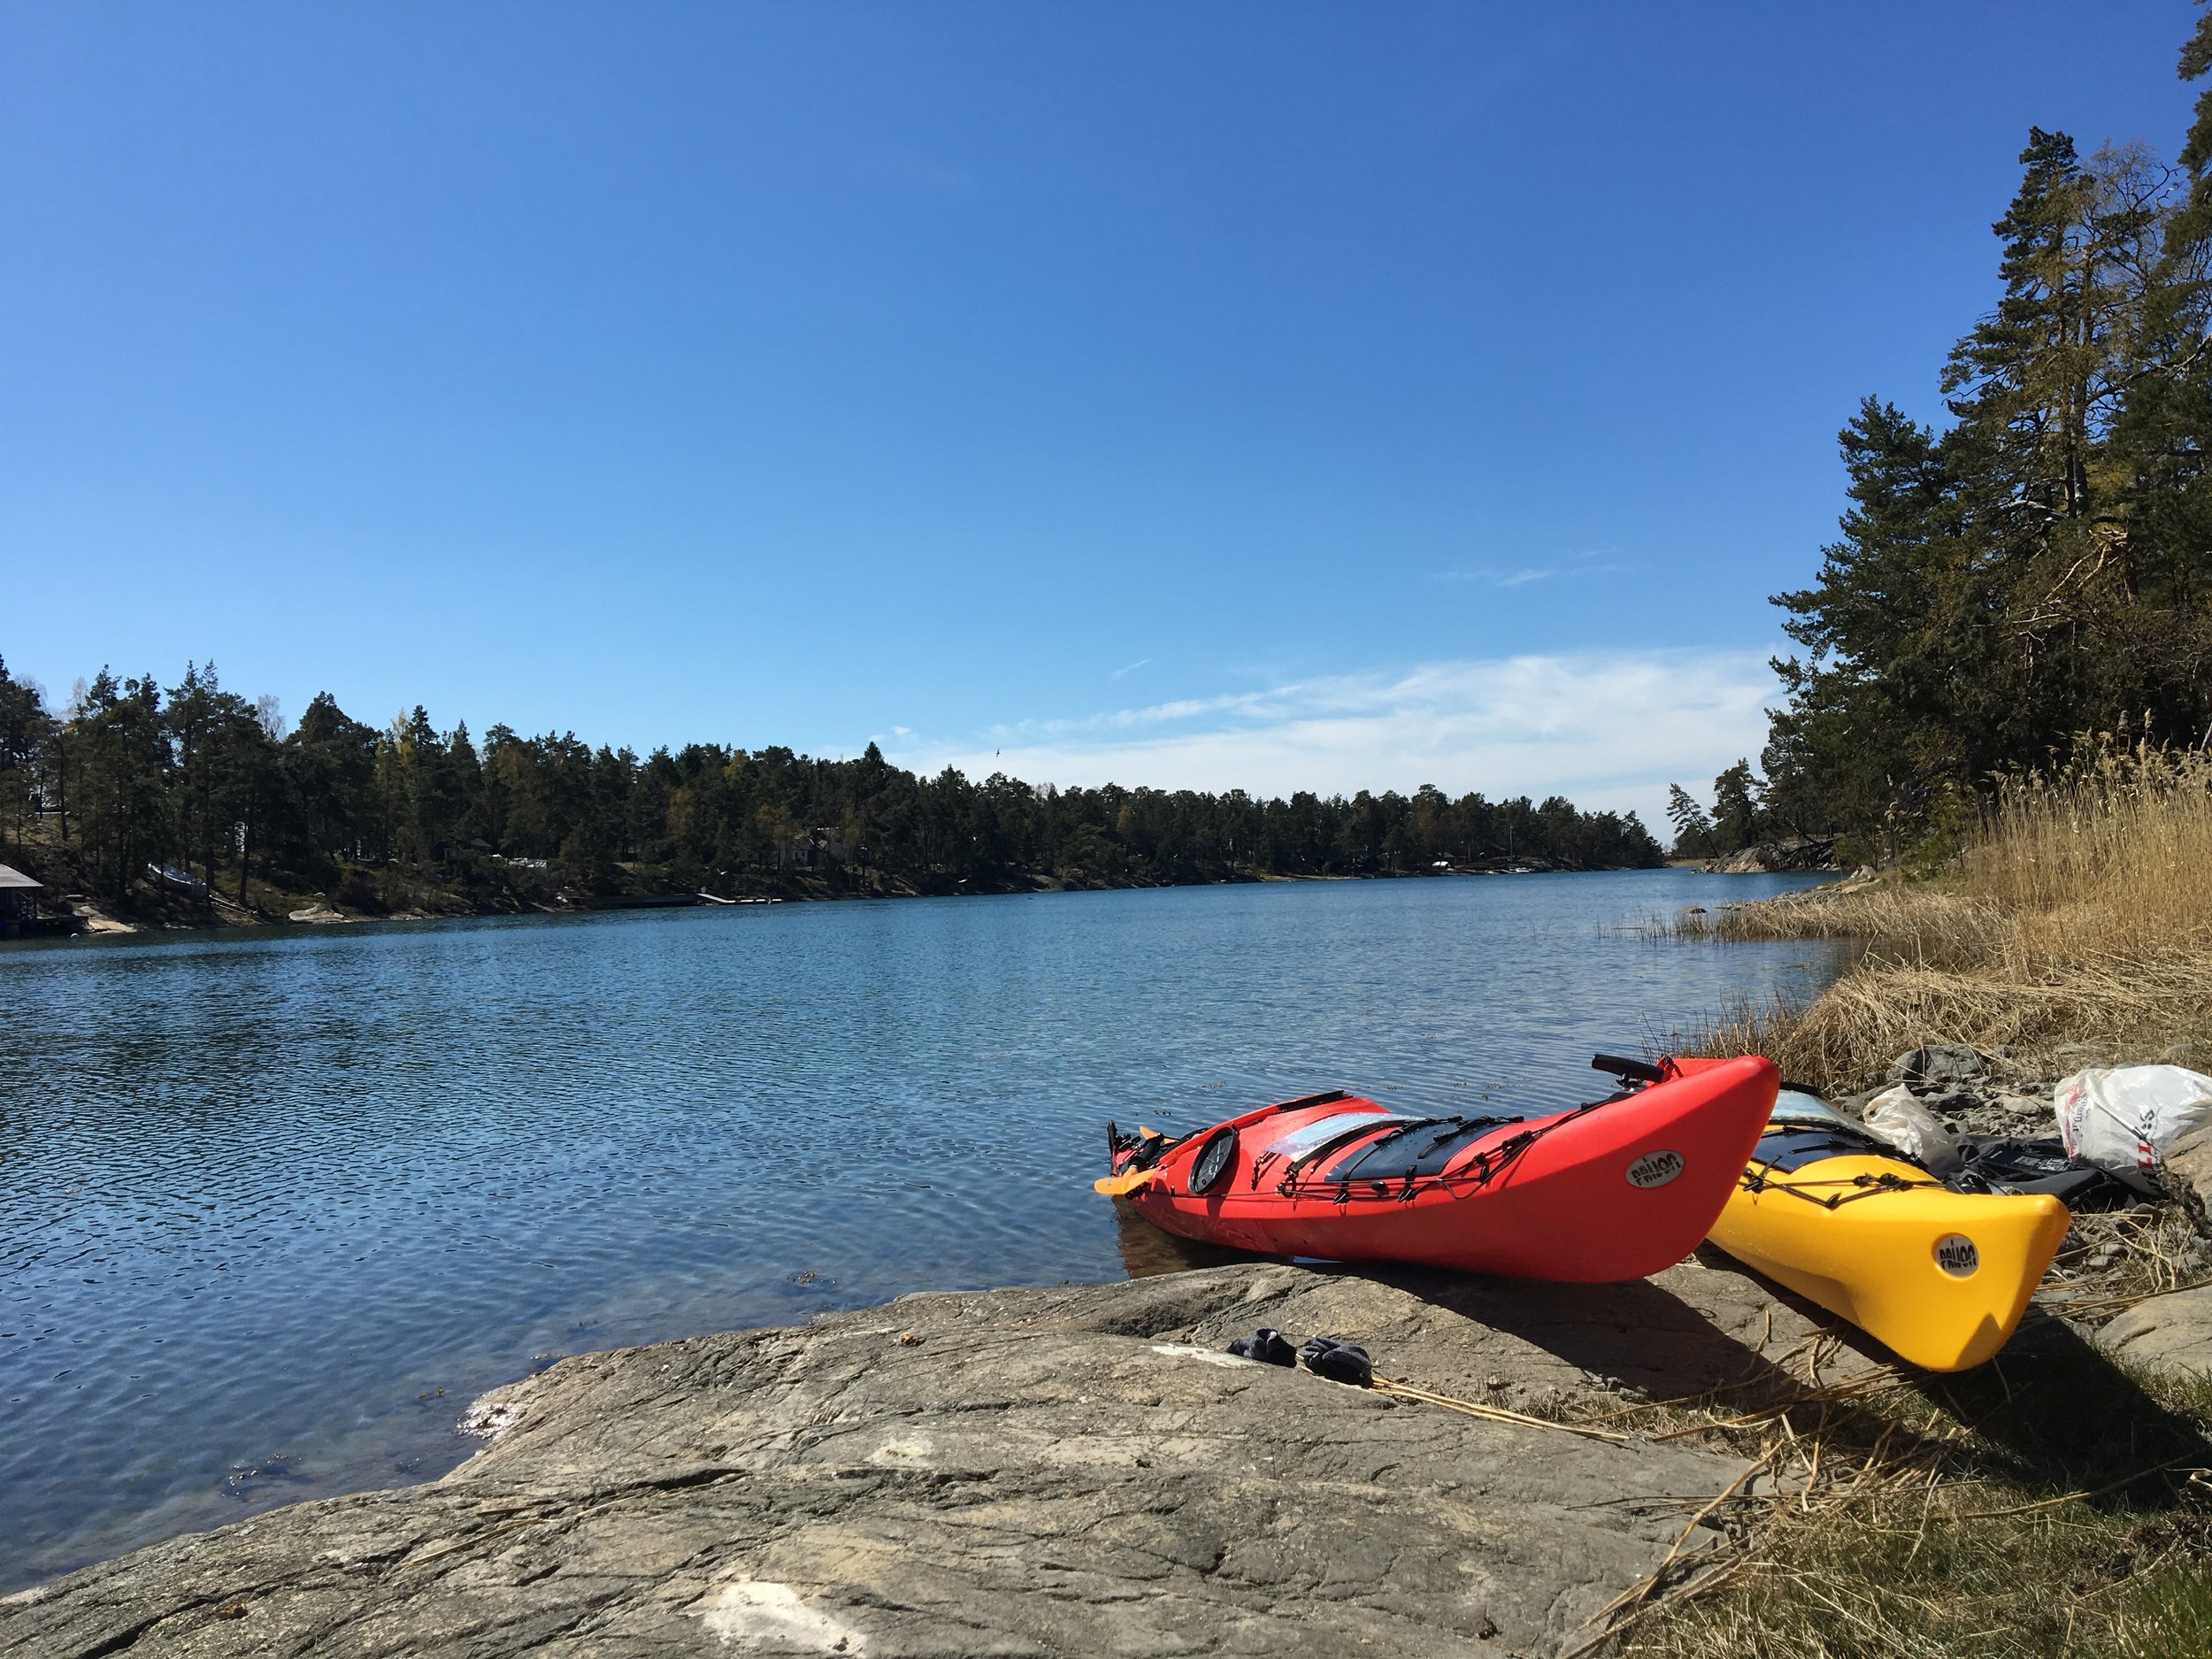  Visites guidées de l'archipel de Stockholm en kayak 3 jours 2